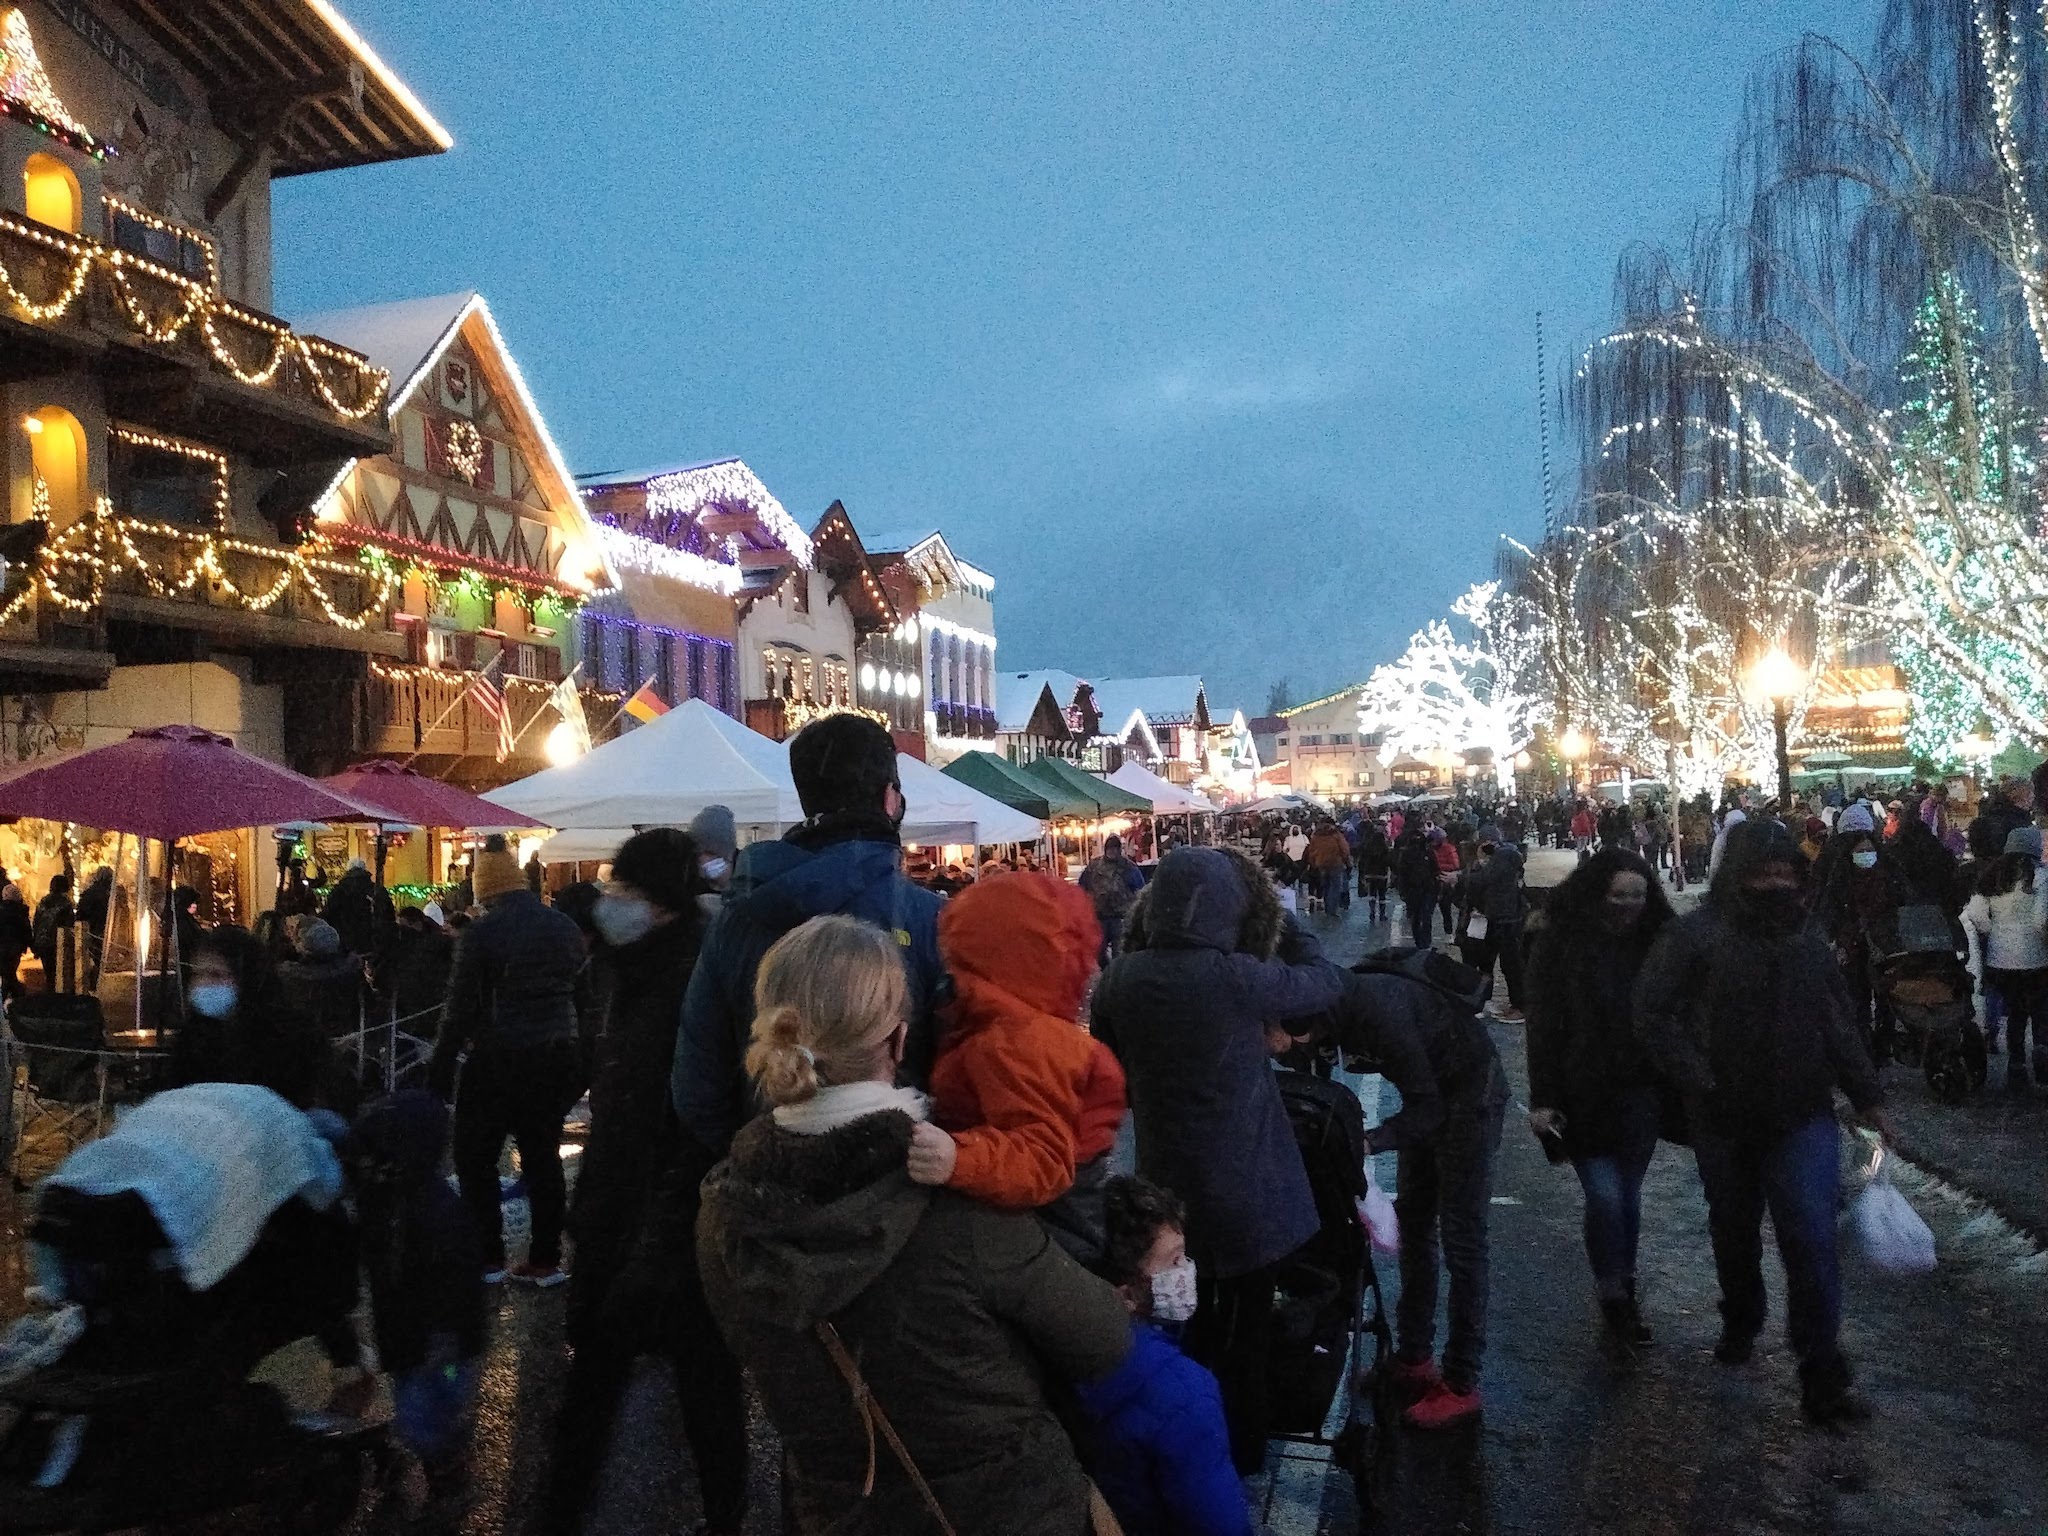 Leavenworth Christmas Lighting Festival